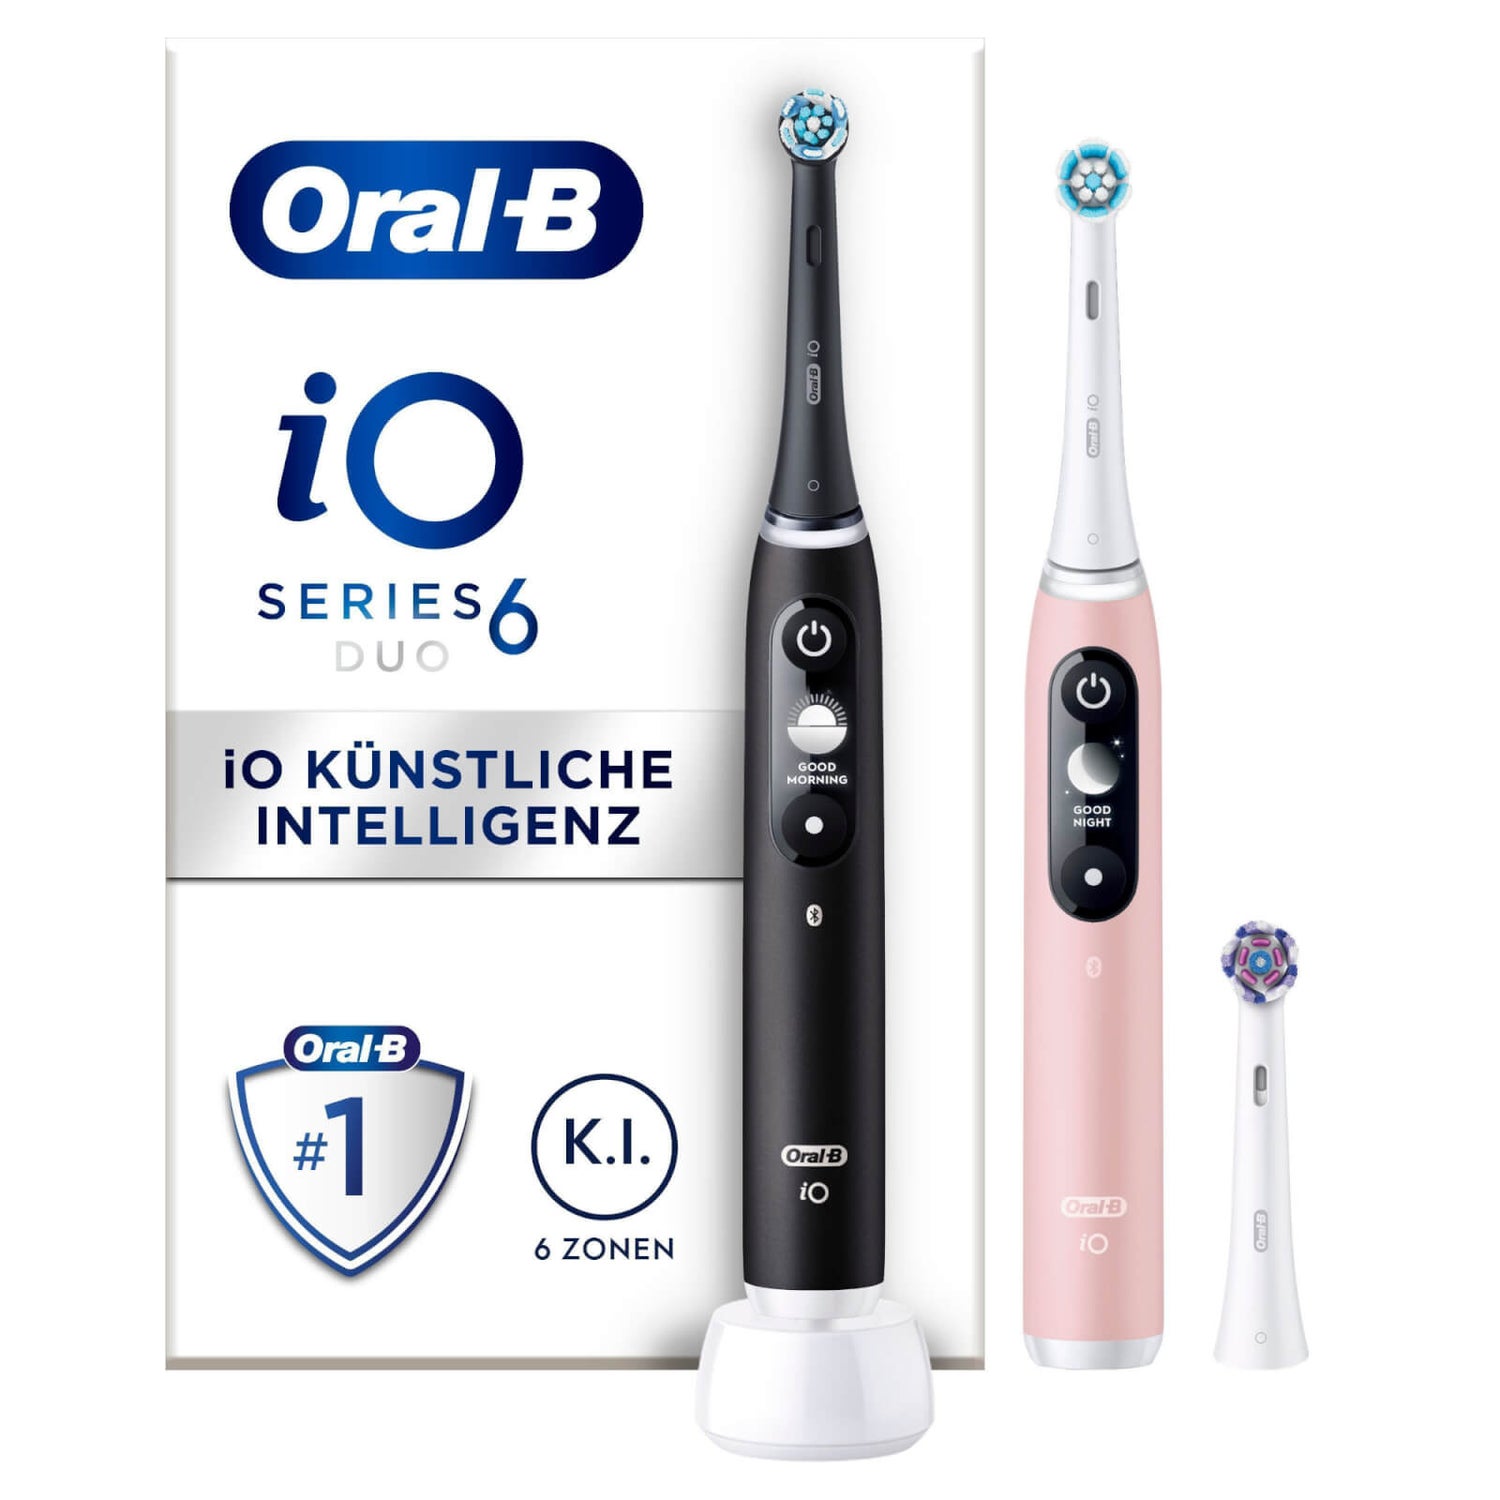 Oral-B iO Series 6 Duopack Elektrische Zahnbürste, Lava/Pink Sand